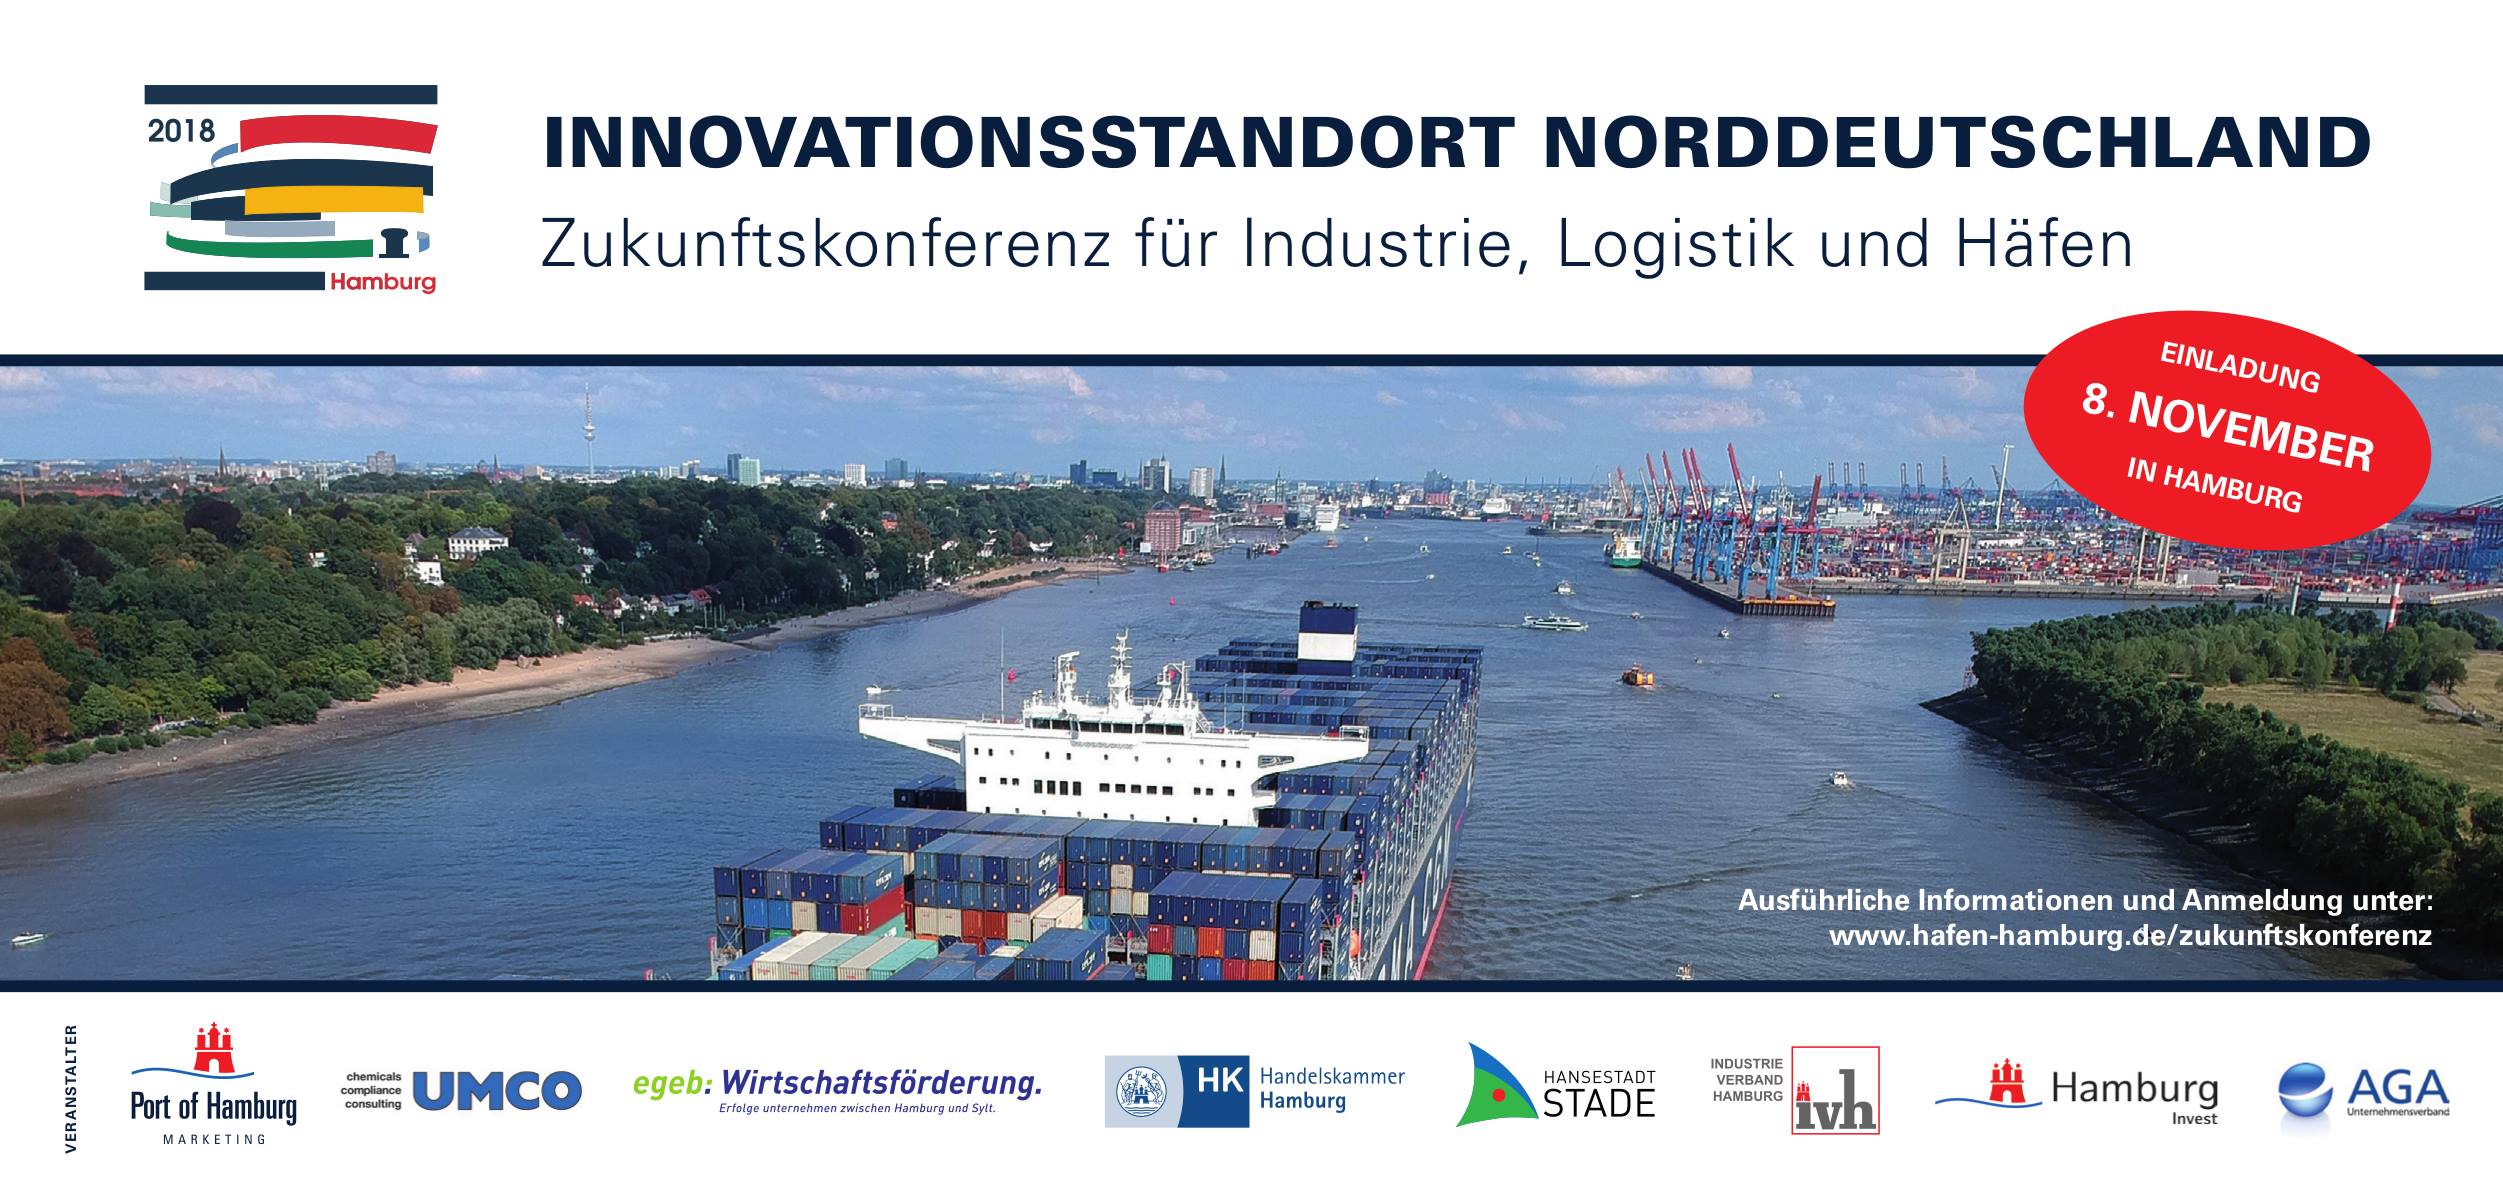 Zukunftskonferenz für Industrie, Logistik und Häfen in Hamburg